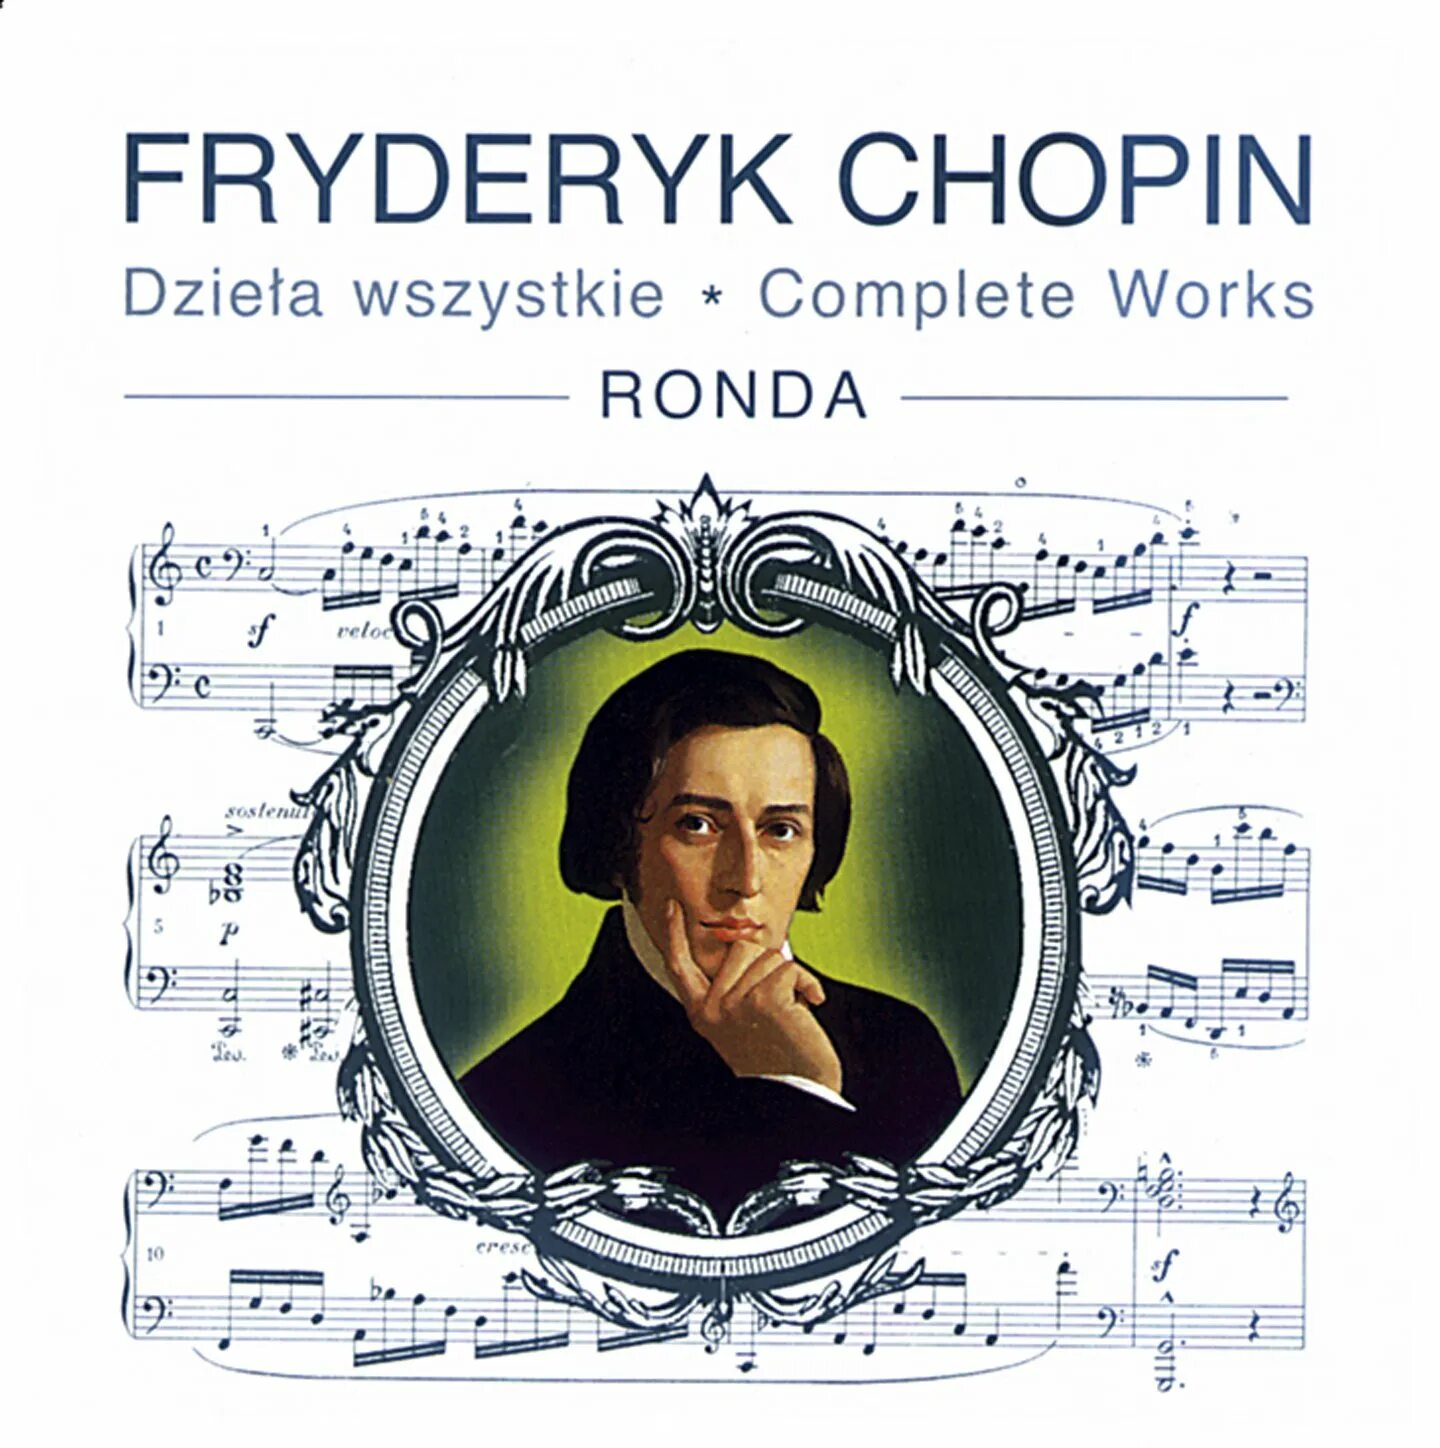 Шопен обложка. Fryderyk Chopin. Frédéric Chopin обложка. Произведения Шопена. Музыка шопена красивая и нежная